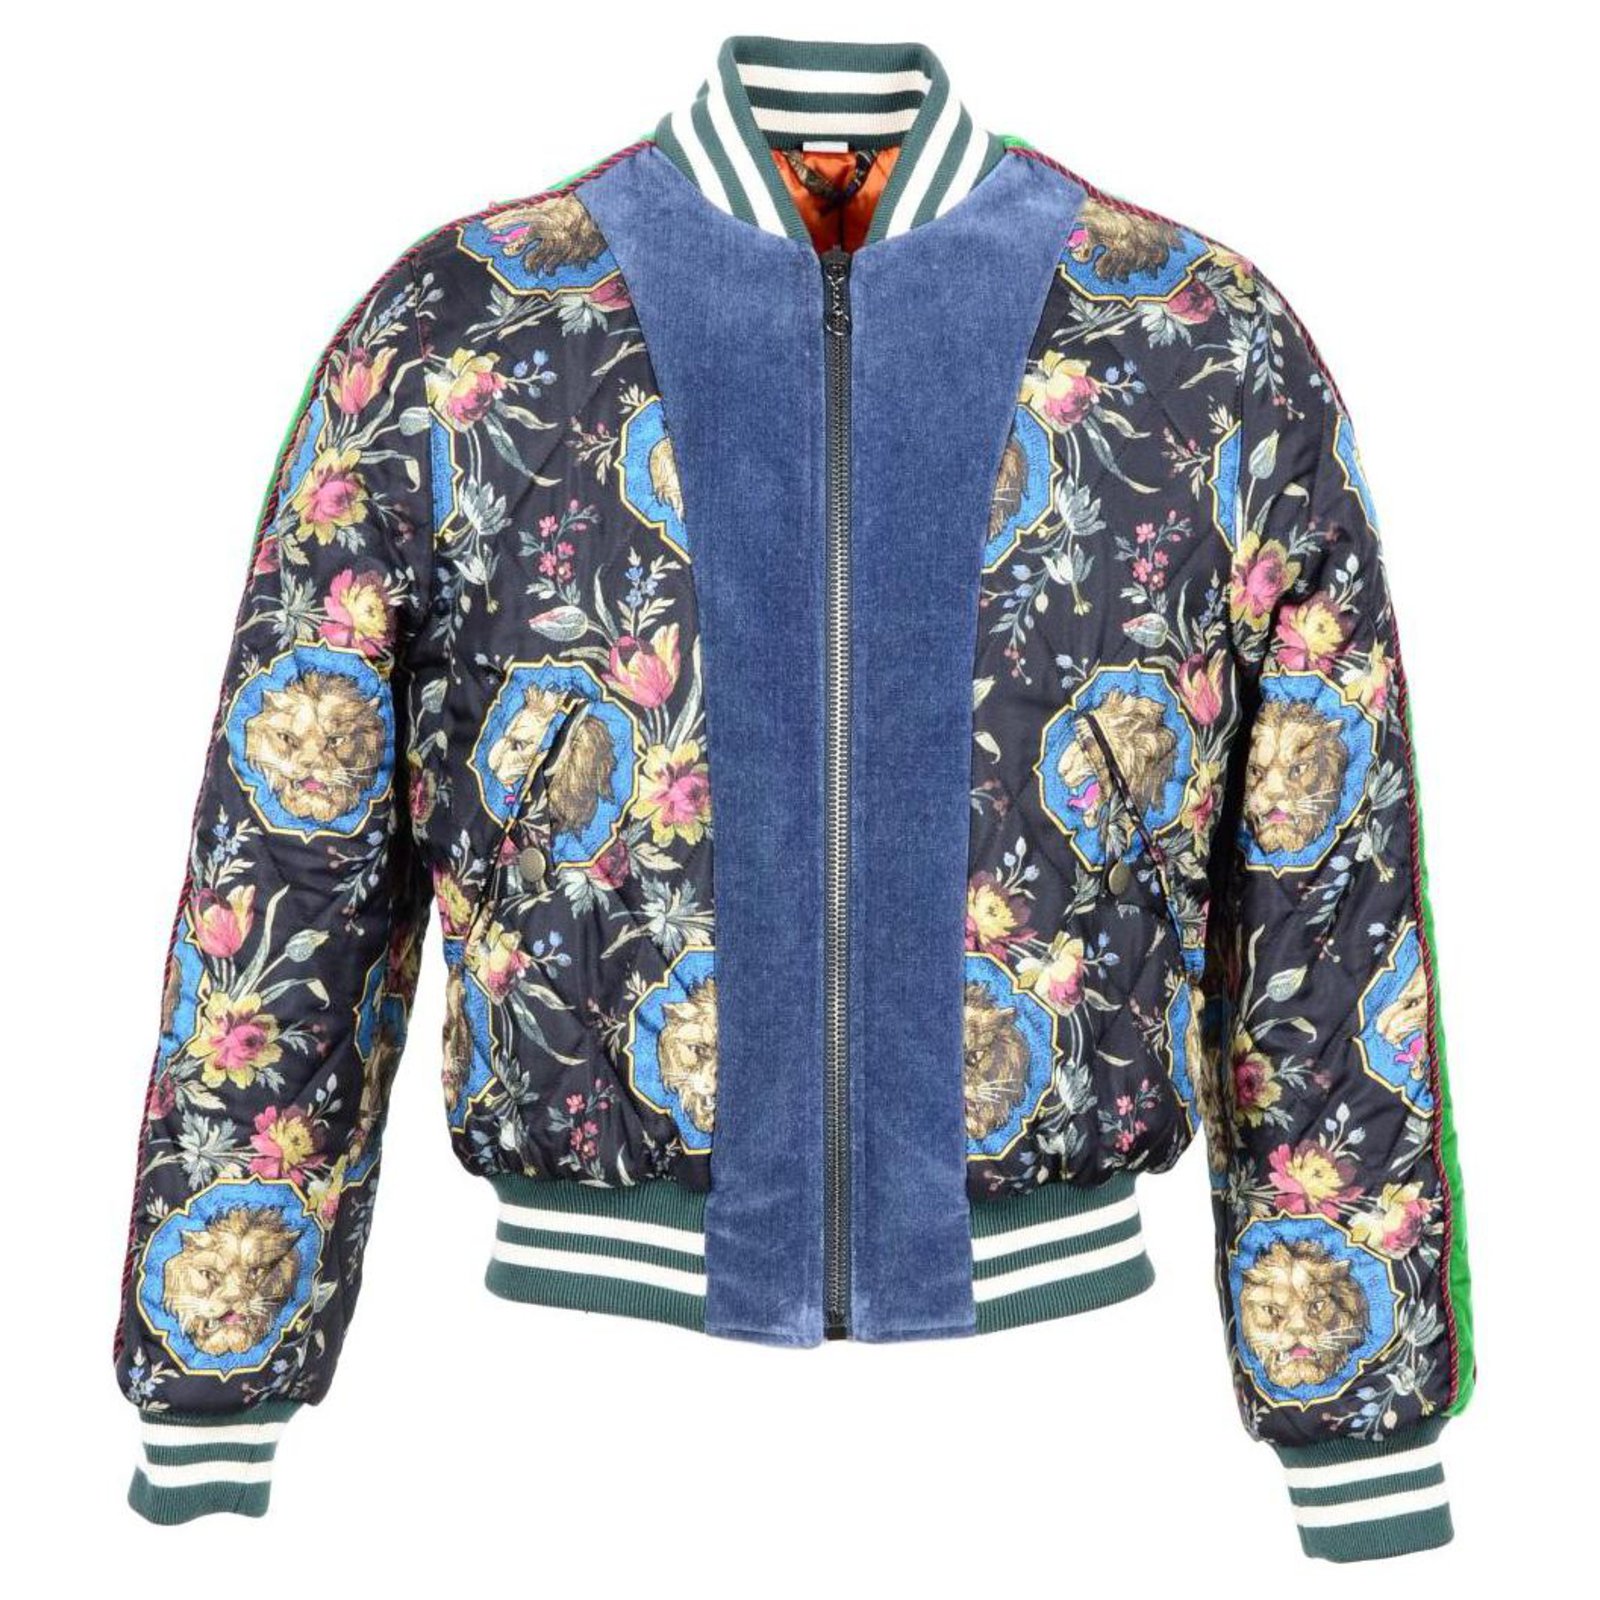 35 Gucci jacket mens ideas  gucci jacket mens, gucci jacket